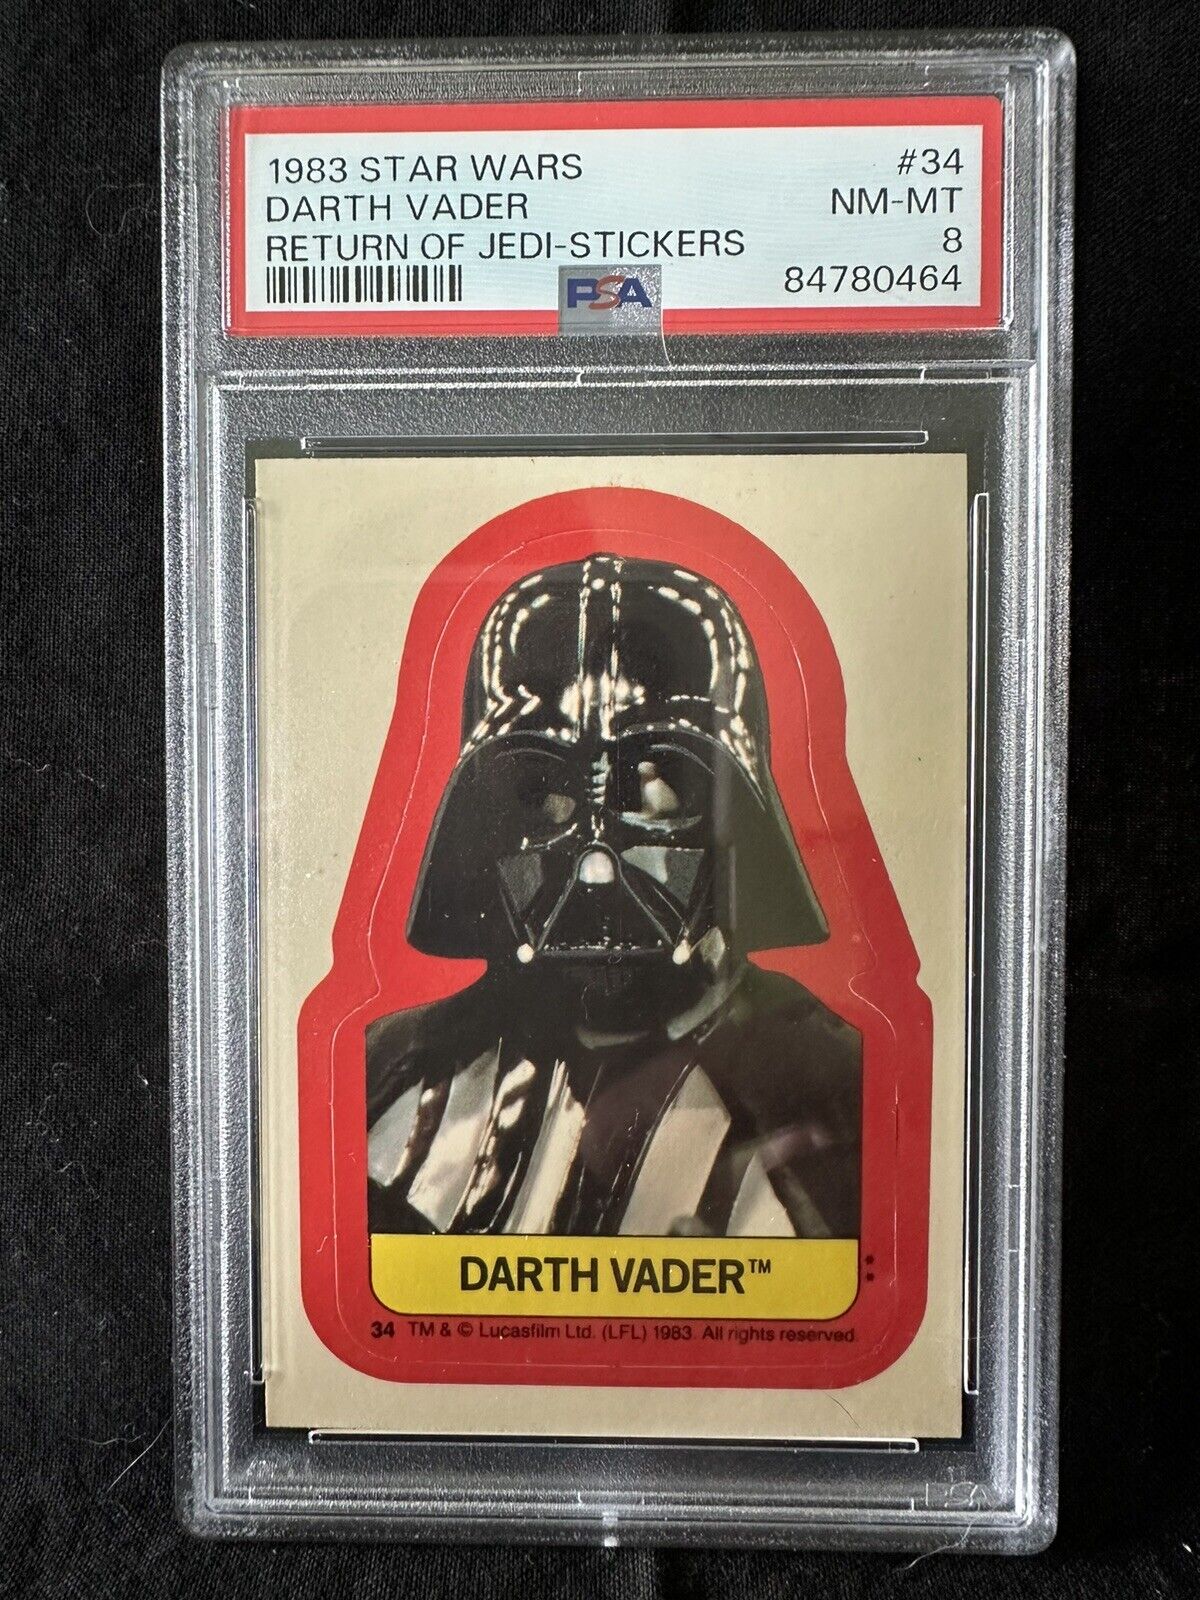 Darth Vader 1983 Star Wars Return of Jedi Stickers #34 NM-MT PSA 8